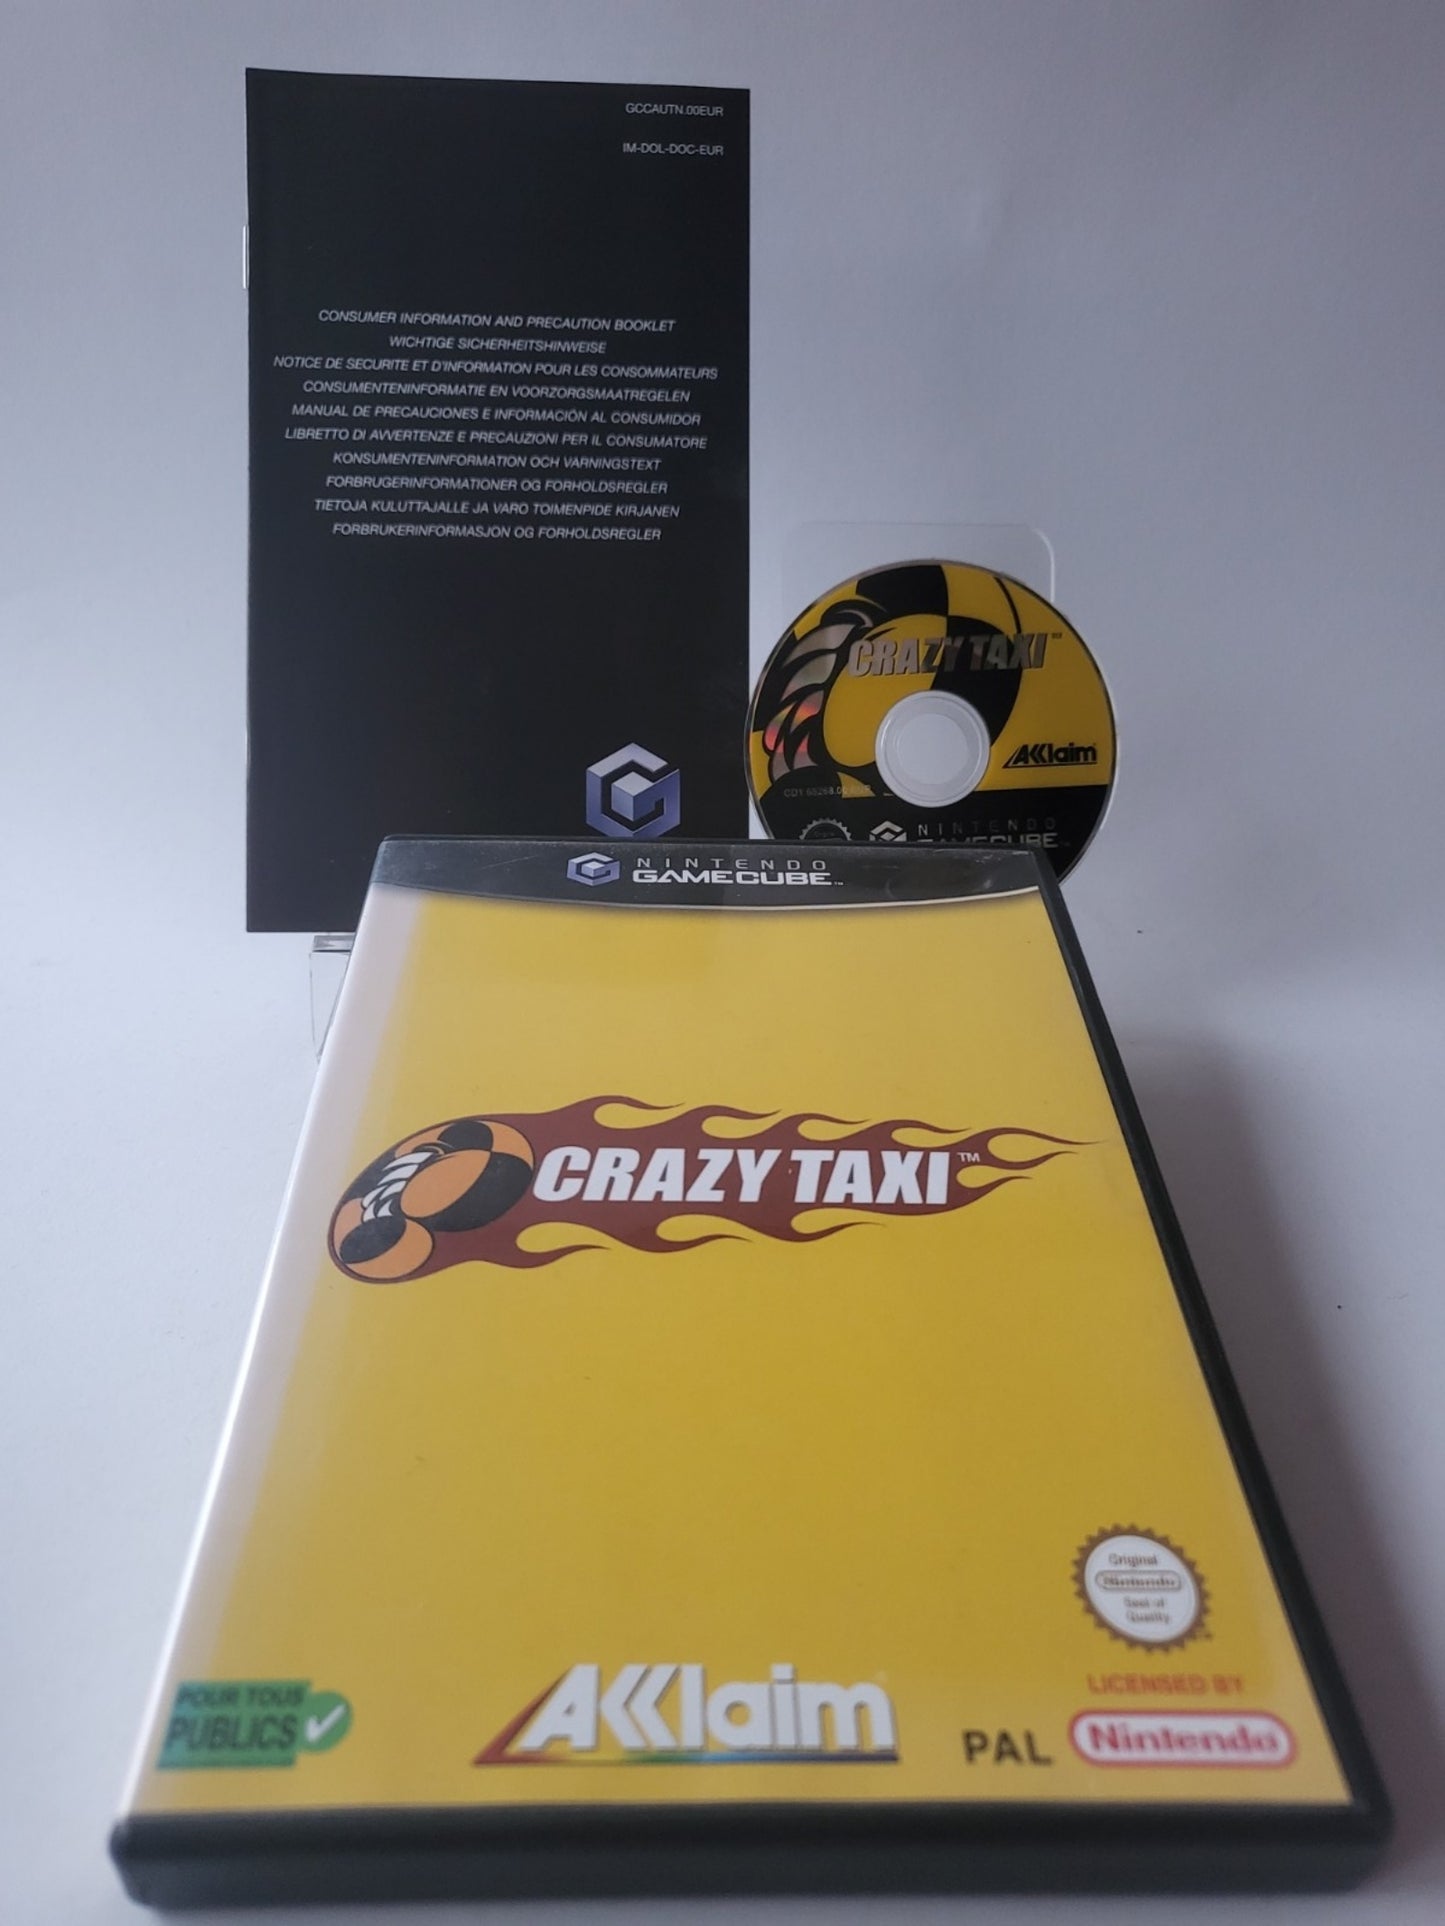 Crazy Taxi Nintendo Gamecube